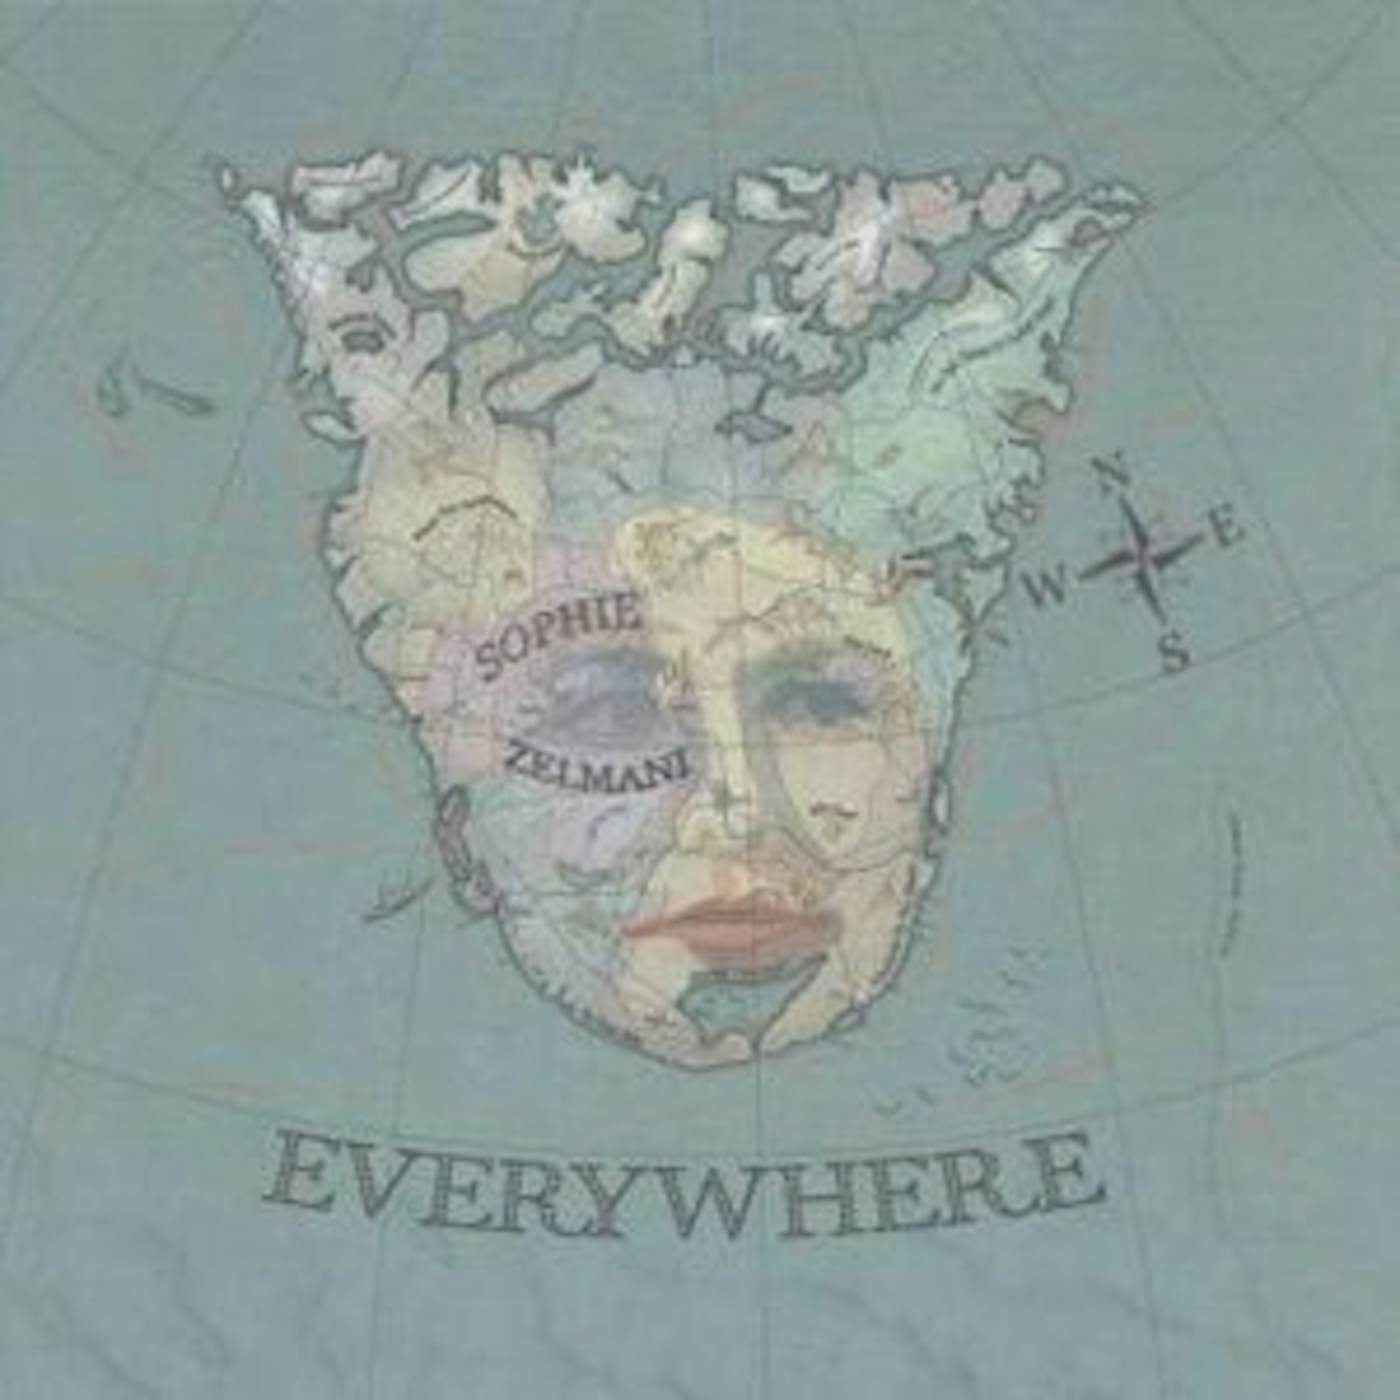 Sophie Zelmani Everywhere Vinyl Record